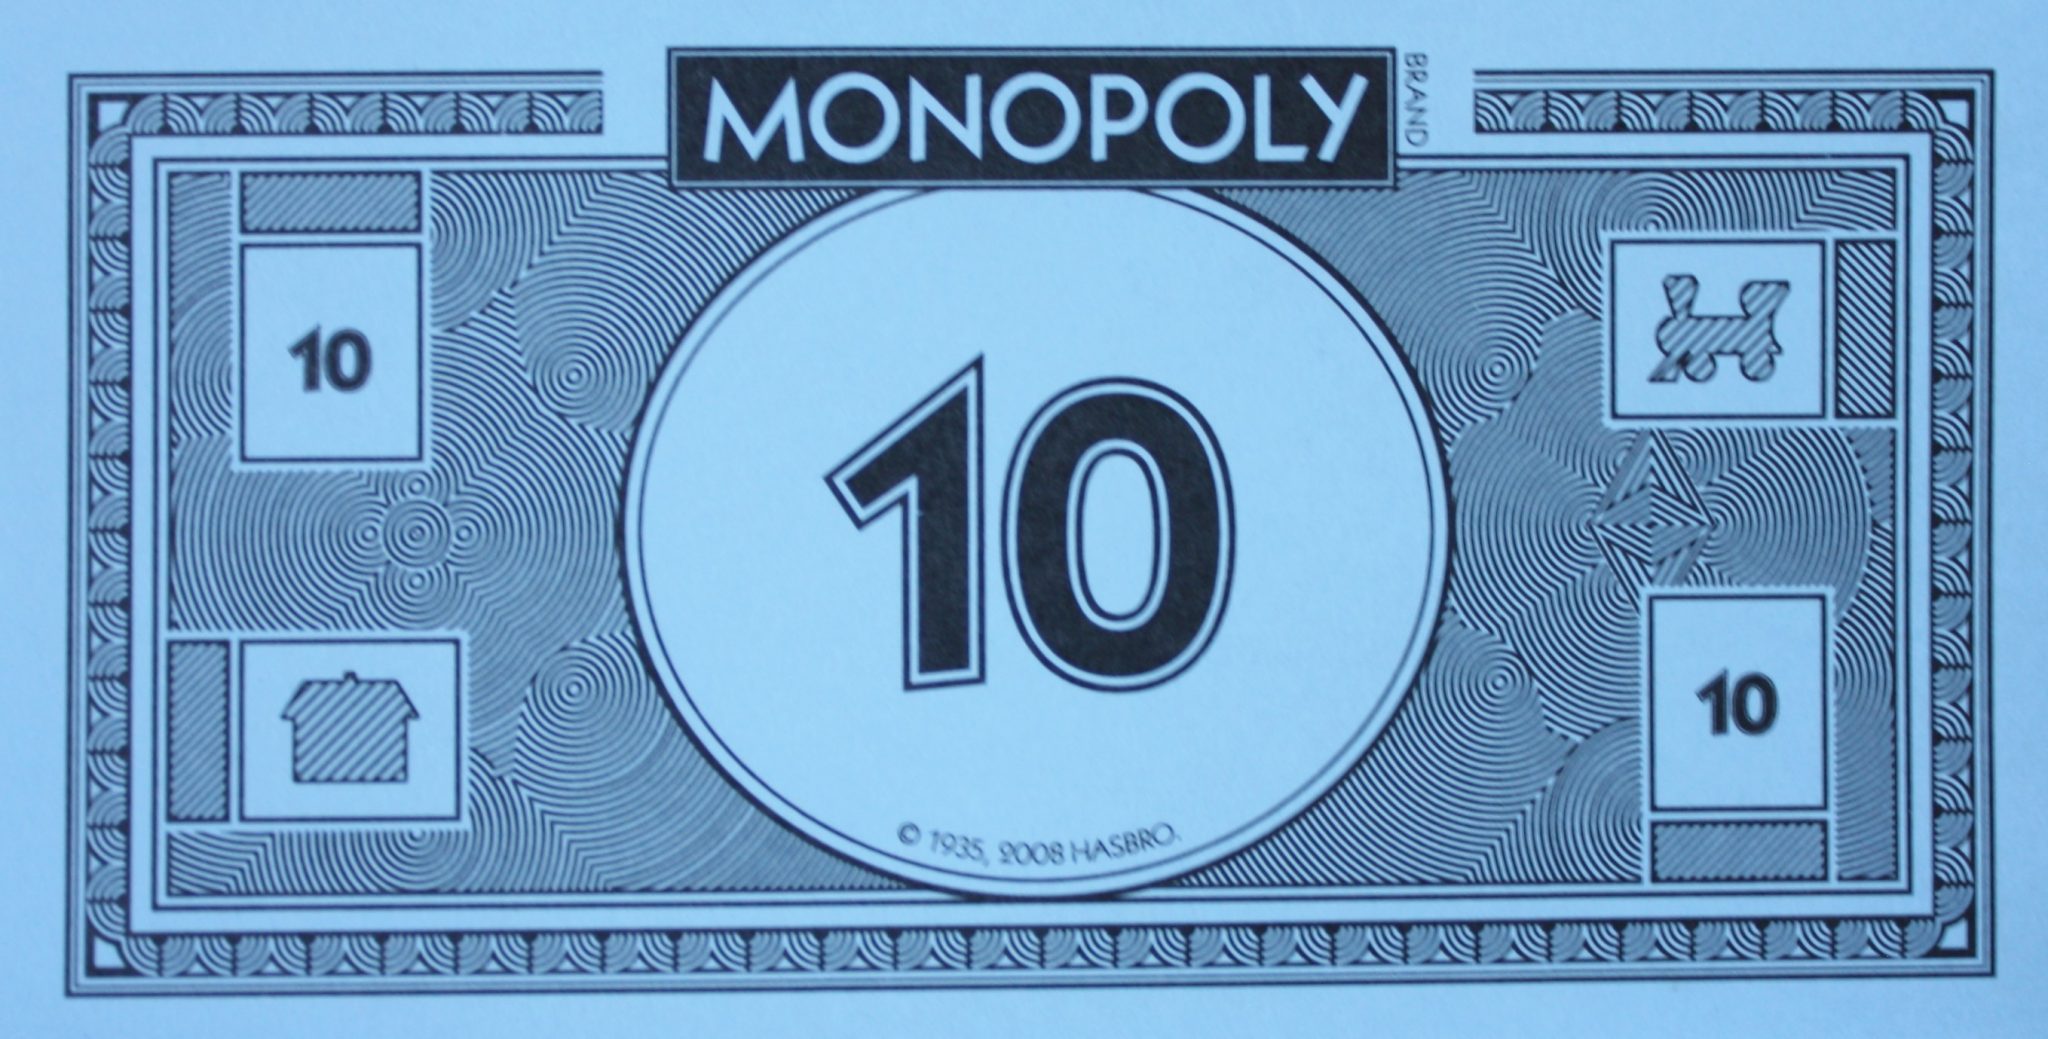 original monopoly board money values